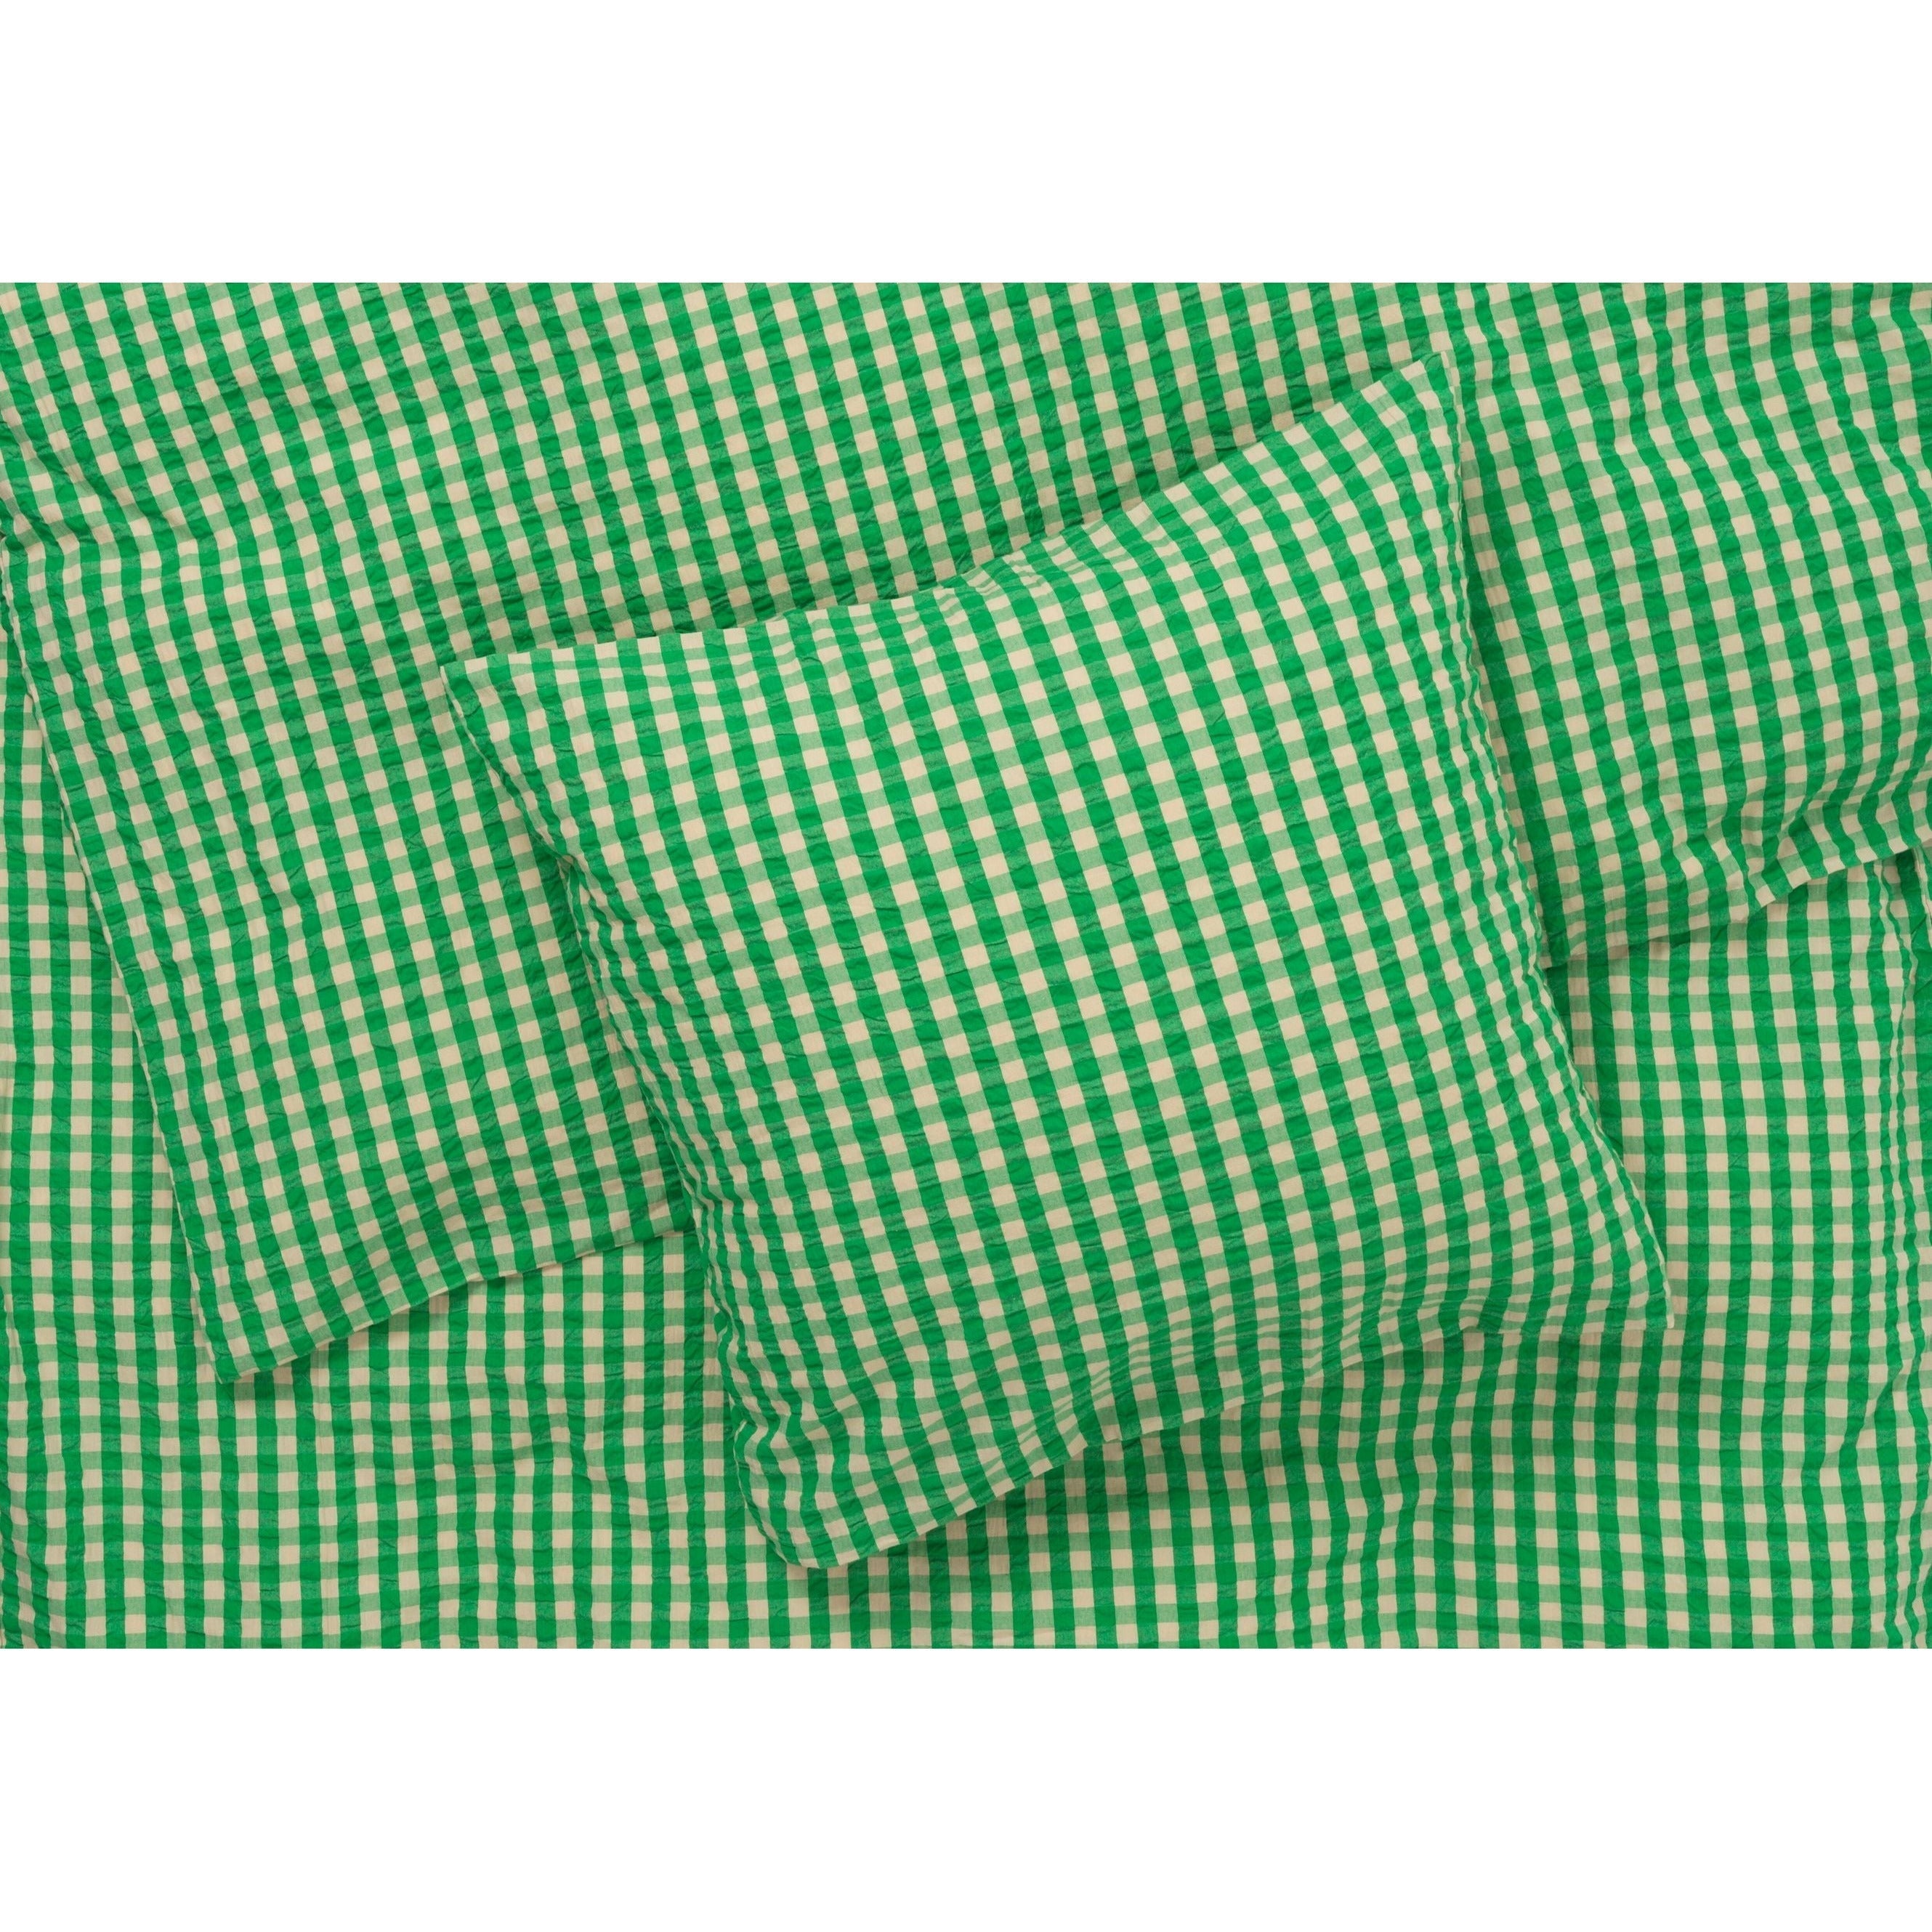 Juna Bæk & Wave -sängkläder 140x200 cm, grön/sand